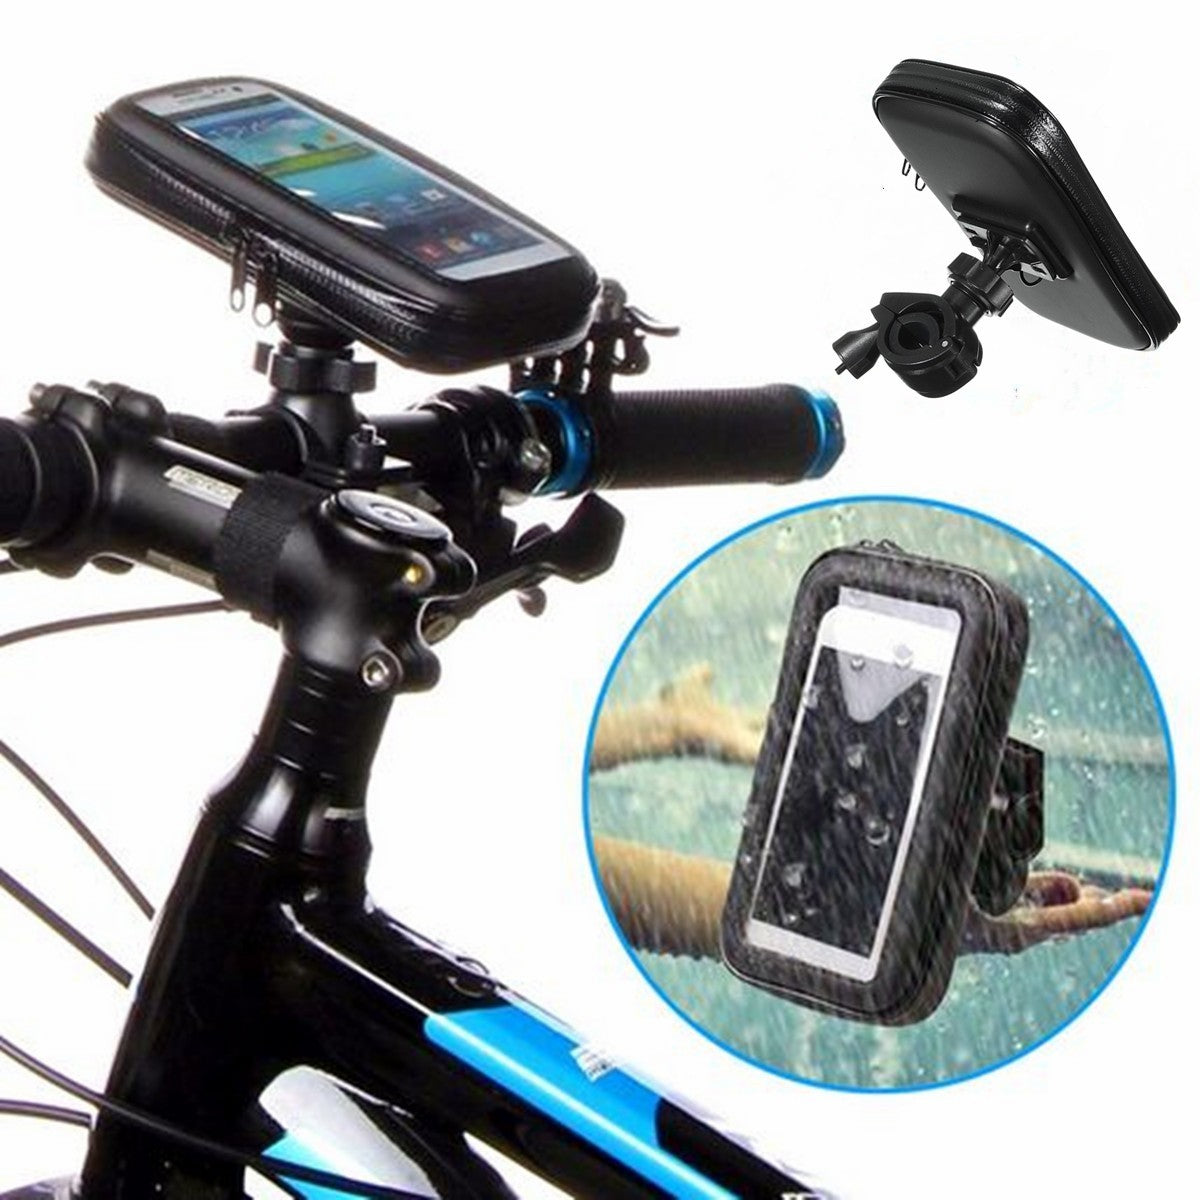 Universal Waterproof Motor Bike Motorcycle Case Bike Bag PhonE Mount Holder for Iphone Samsung GPS